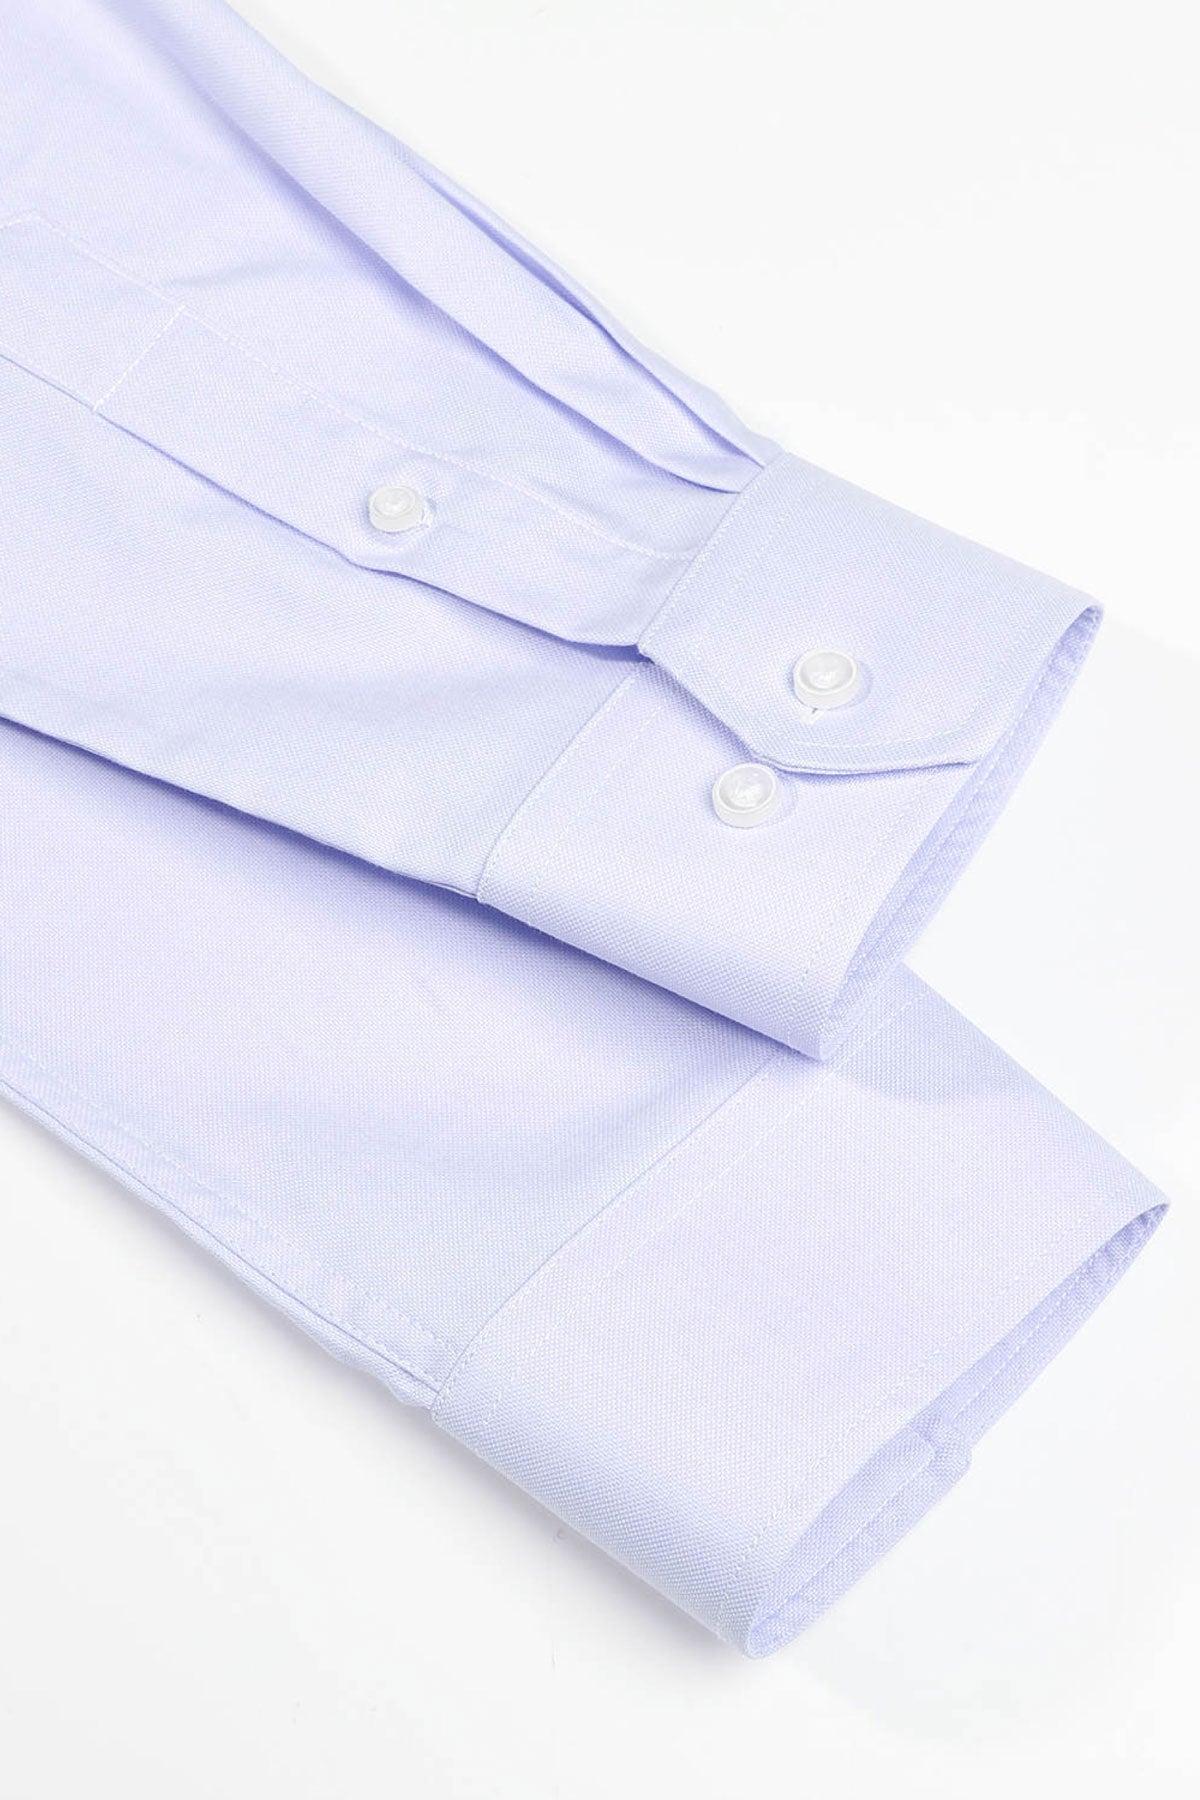 Strijkvrij Overhemd - Lila Royal Oxford - Overhemd - Vercate - Vercate - Overhemden - Strijkvrije overhemden - Heren